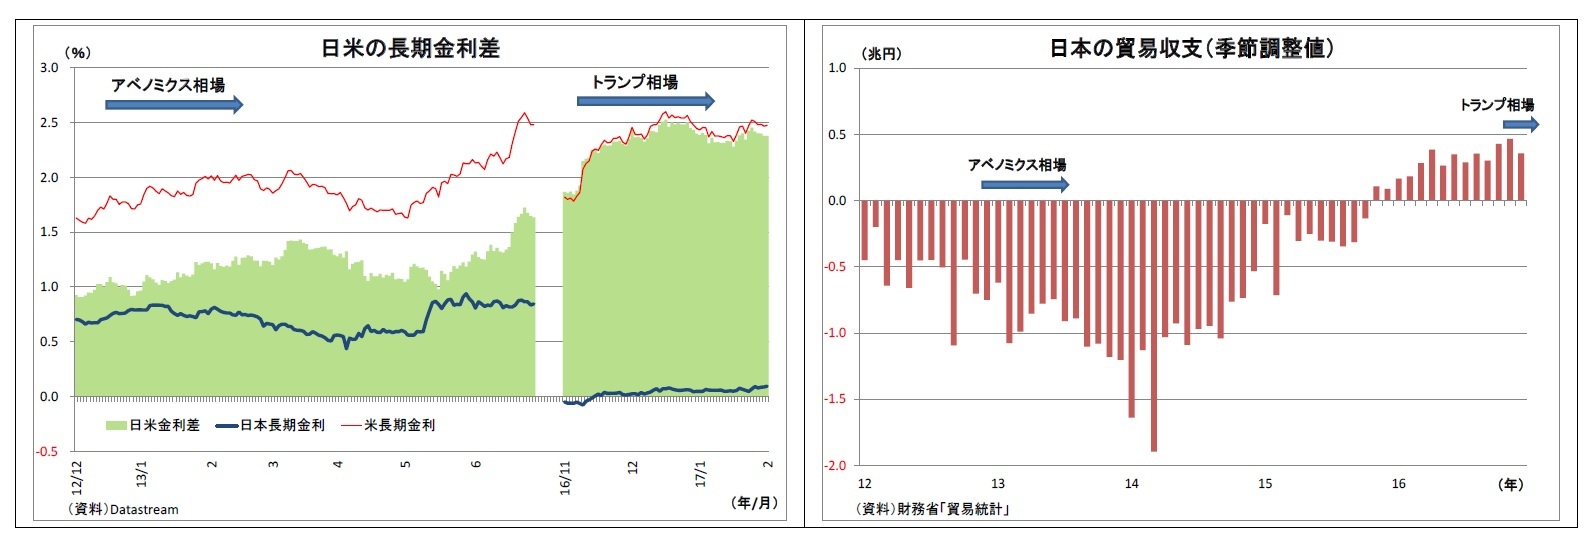 日米の長期金利差/日本の貿易収支（季節調整値）